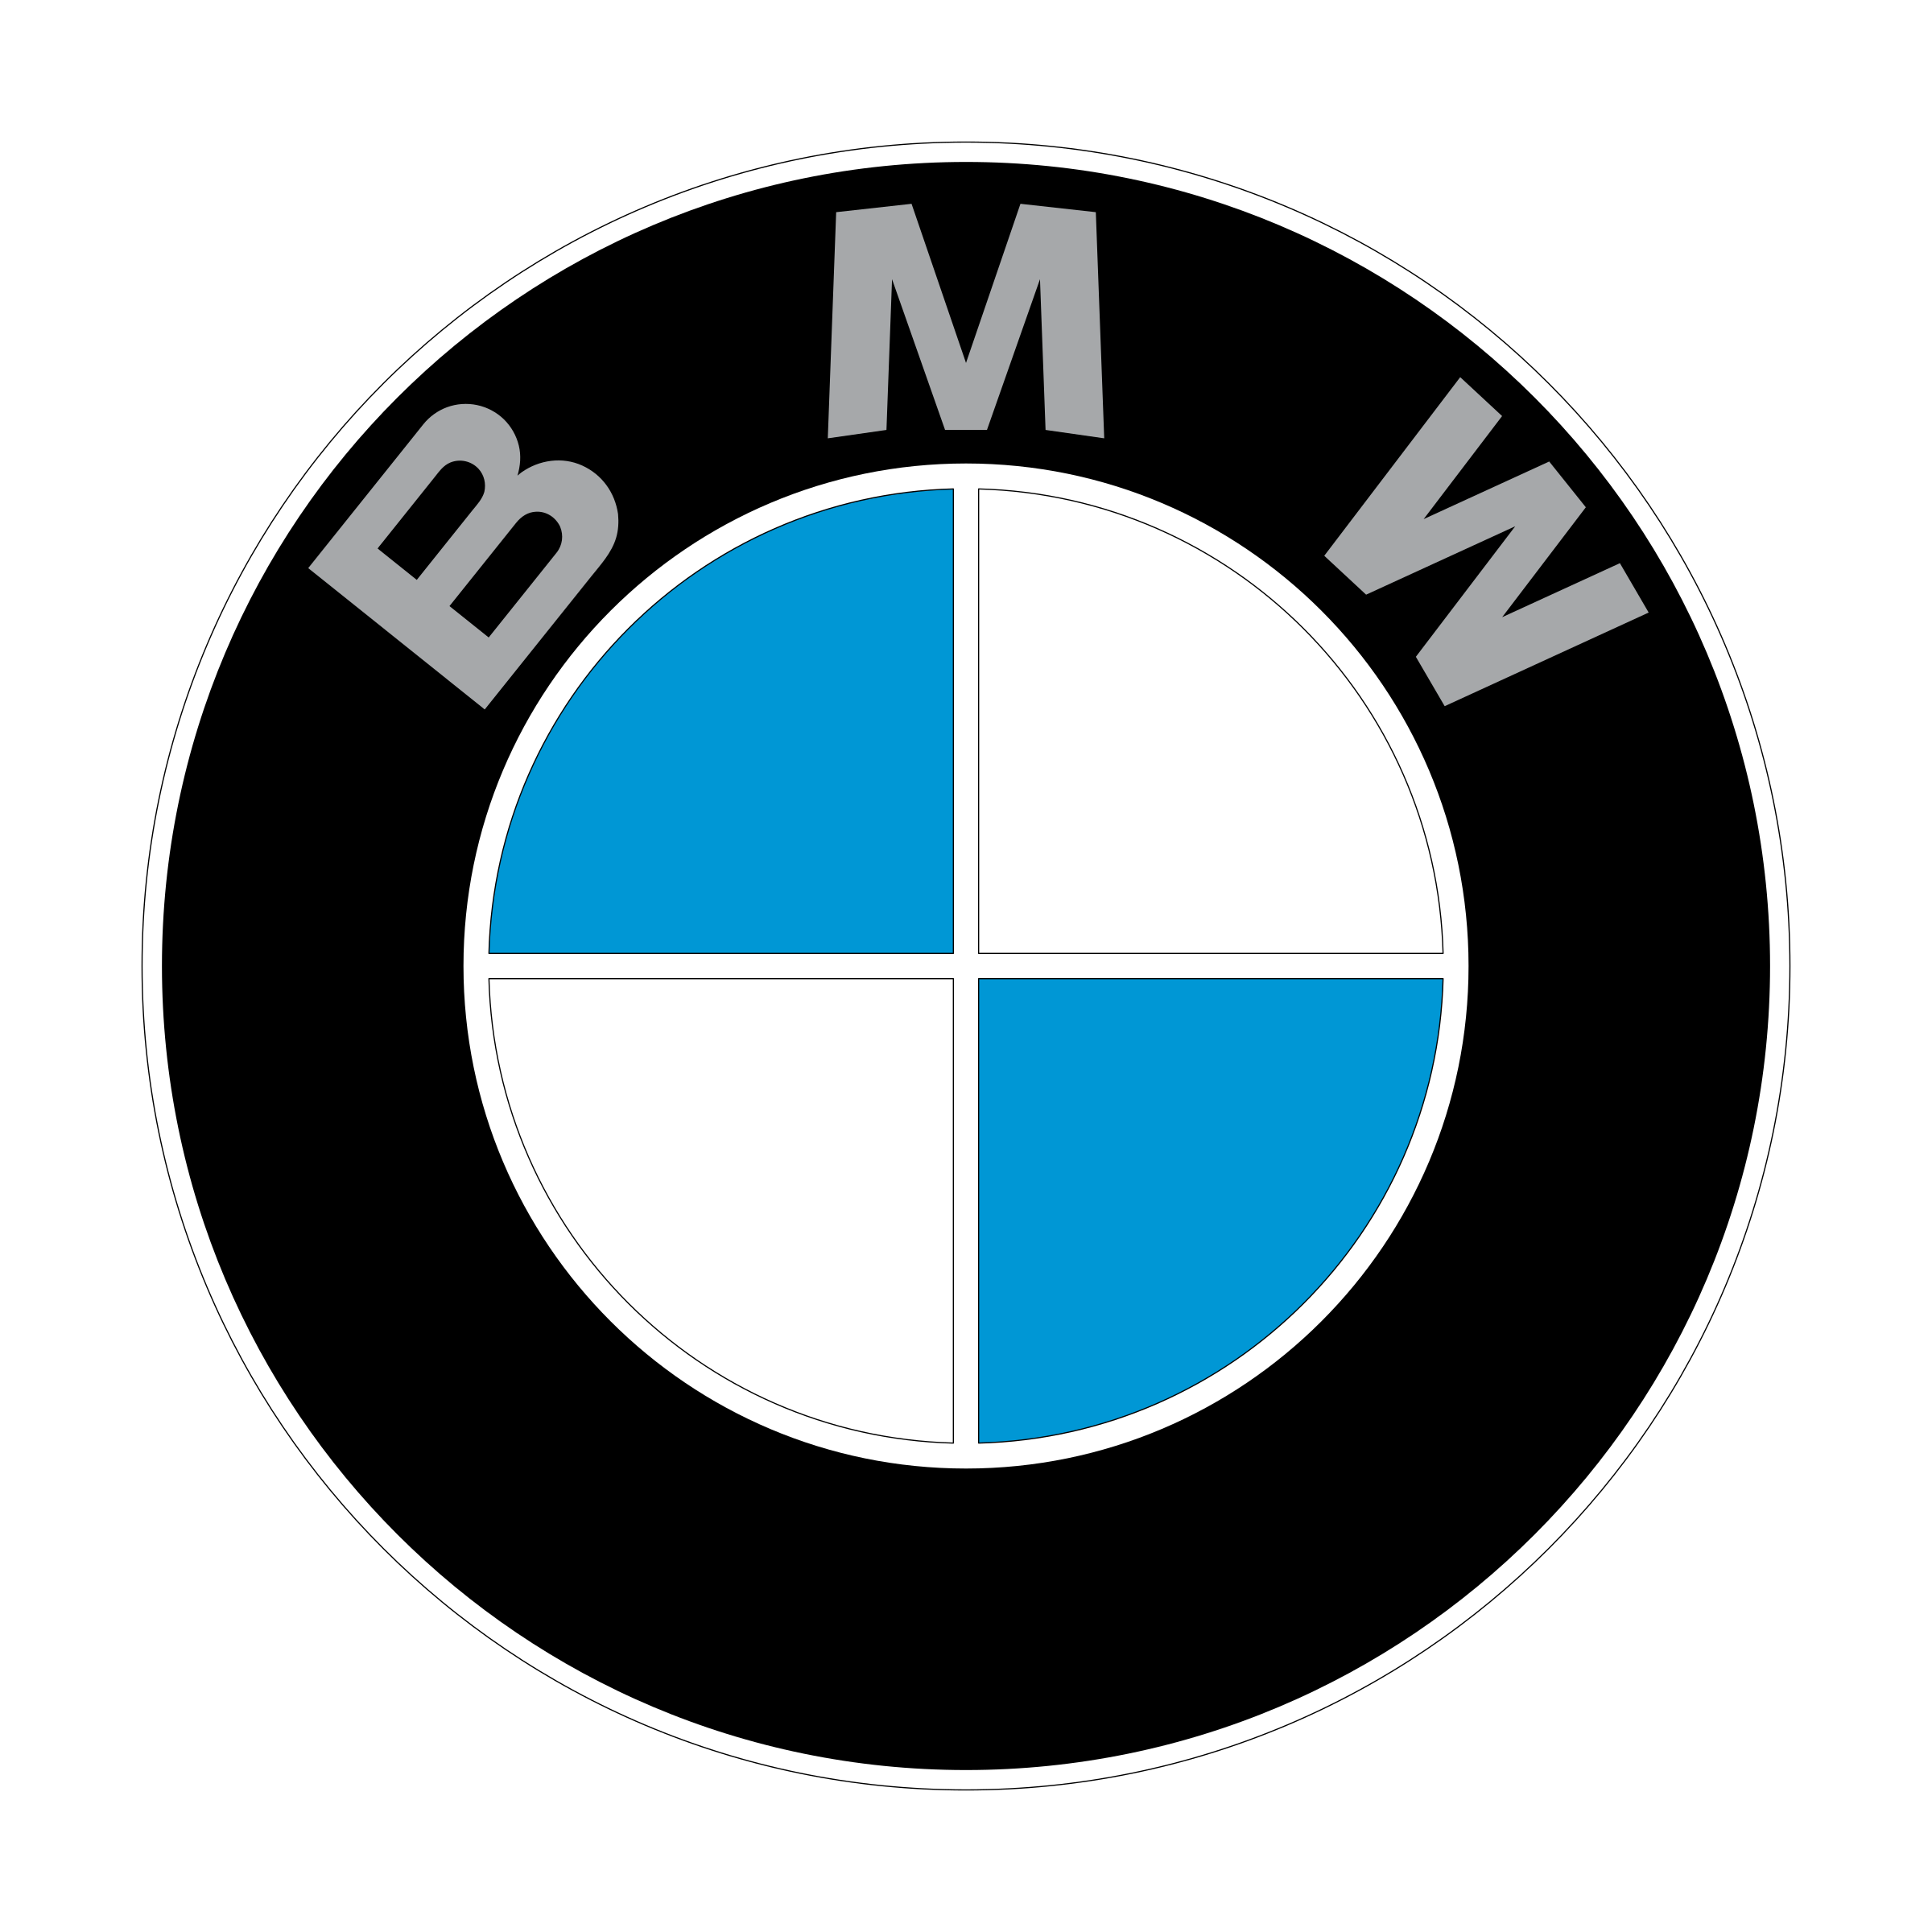 bmw-01-logo-png-transparent.png